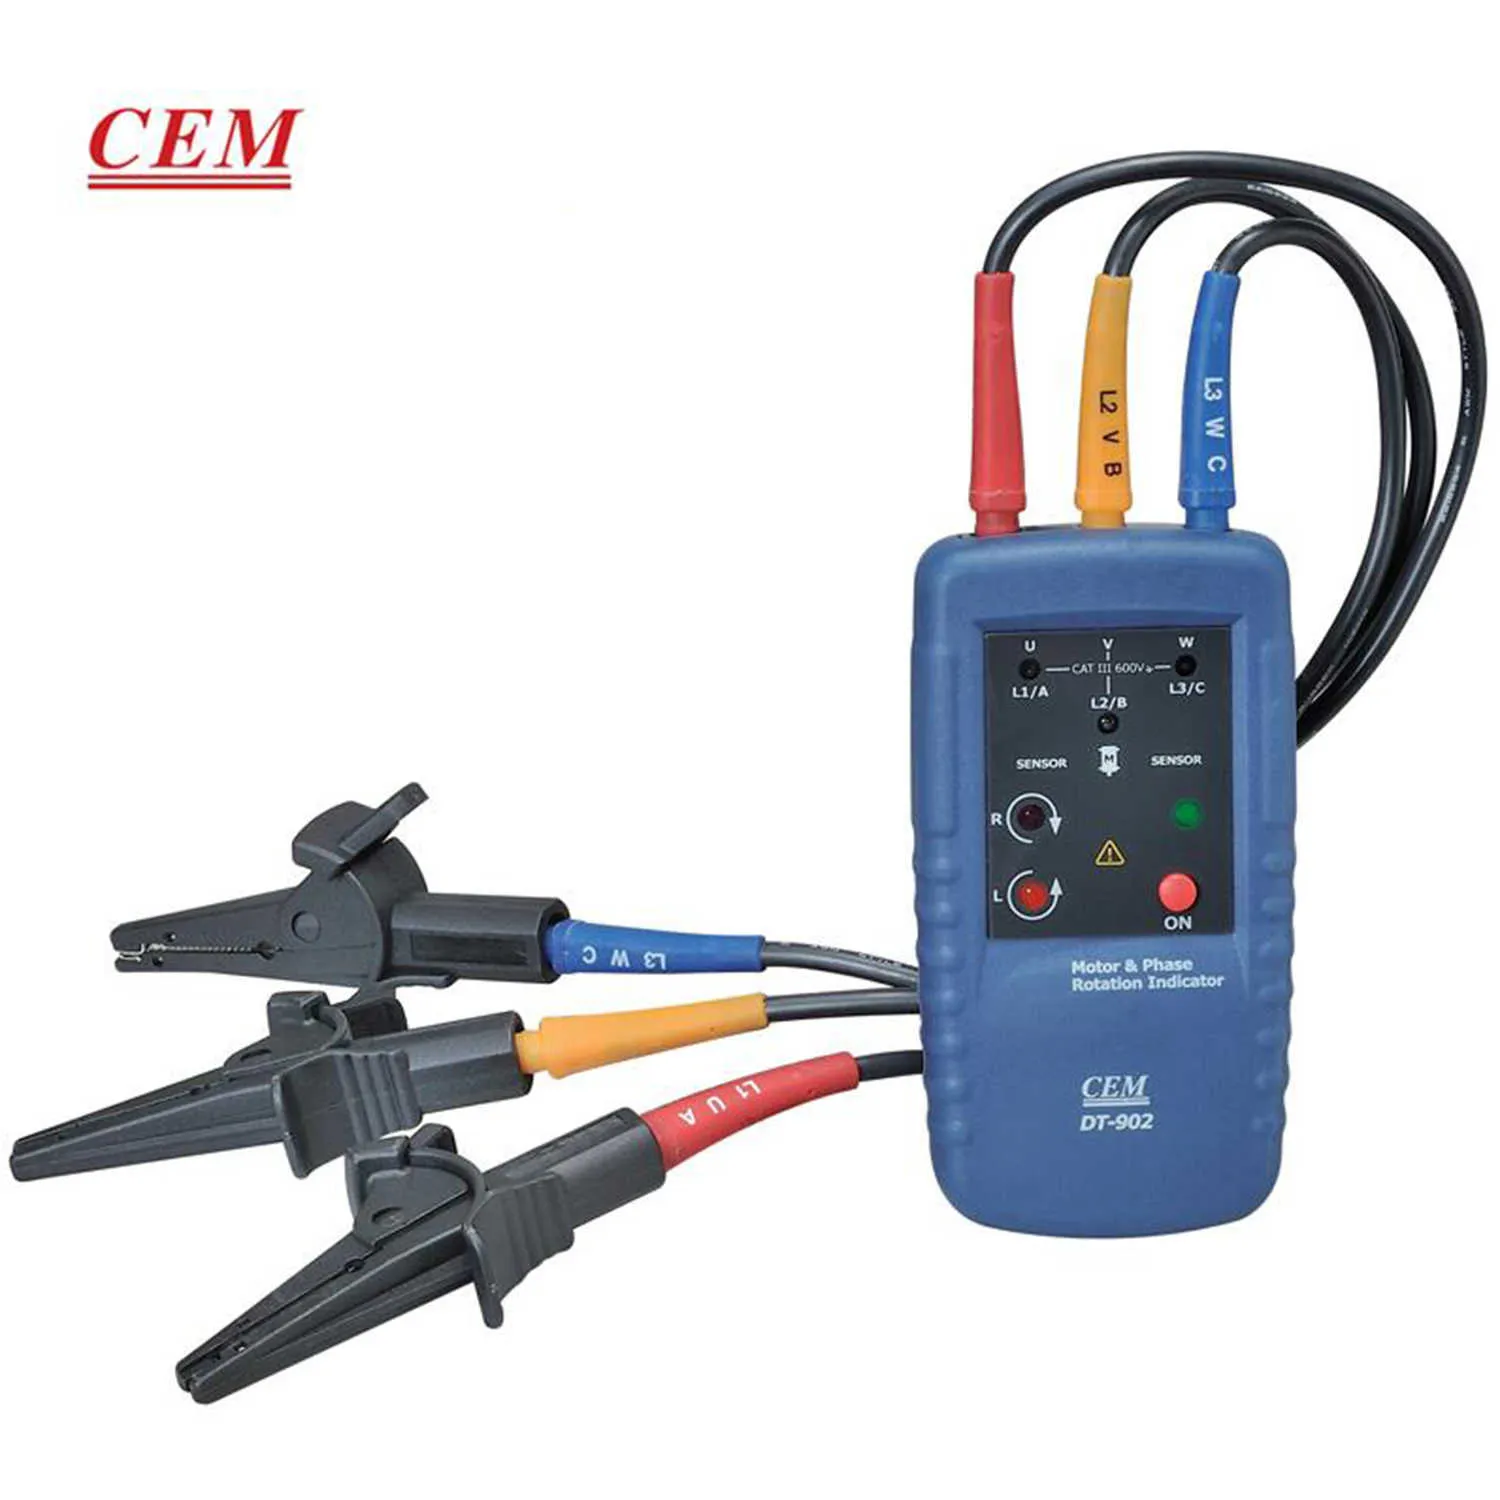 CEM DT-902 Misuratore di sequenza di fase Indicatore di campo magnetico del motore Misuratore di fase digitale Misuratore di tensione e frequenza Tenuto in mano.